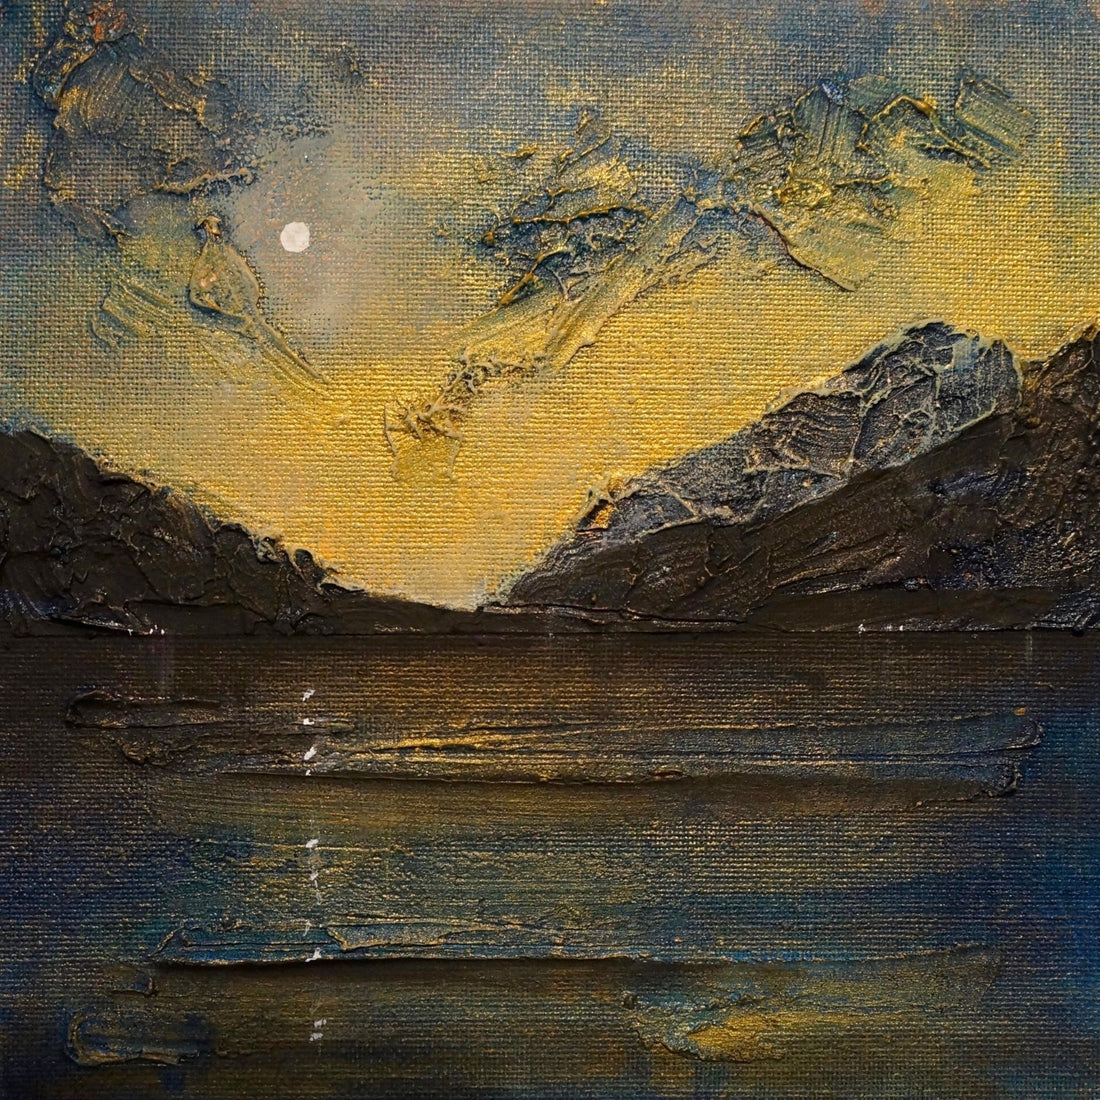 Loch Lomond Moonlight Painting Fine Art Prints